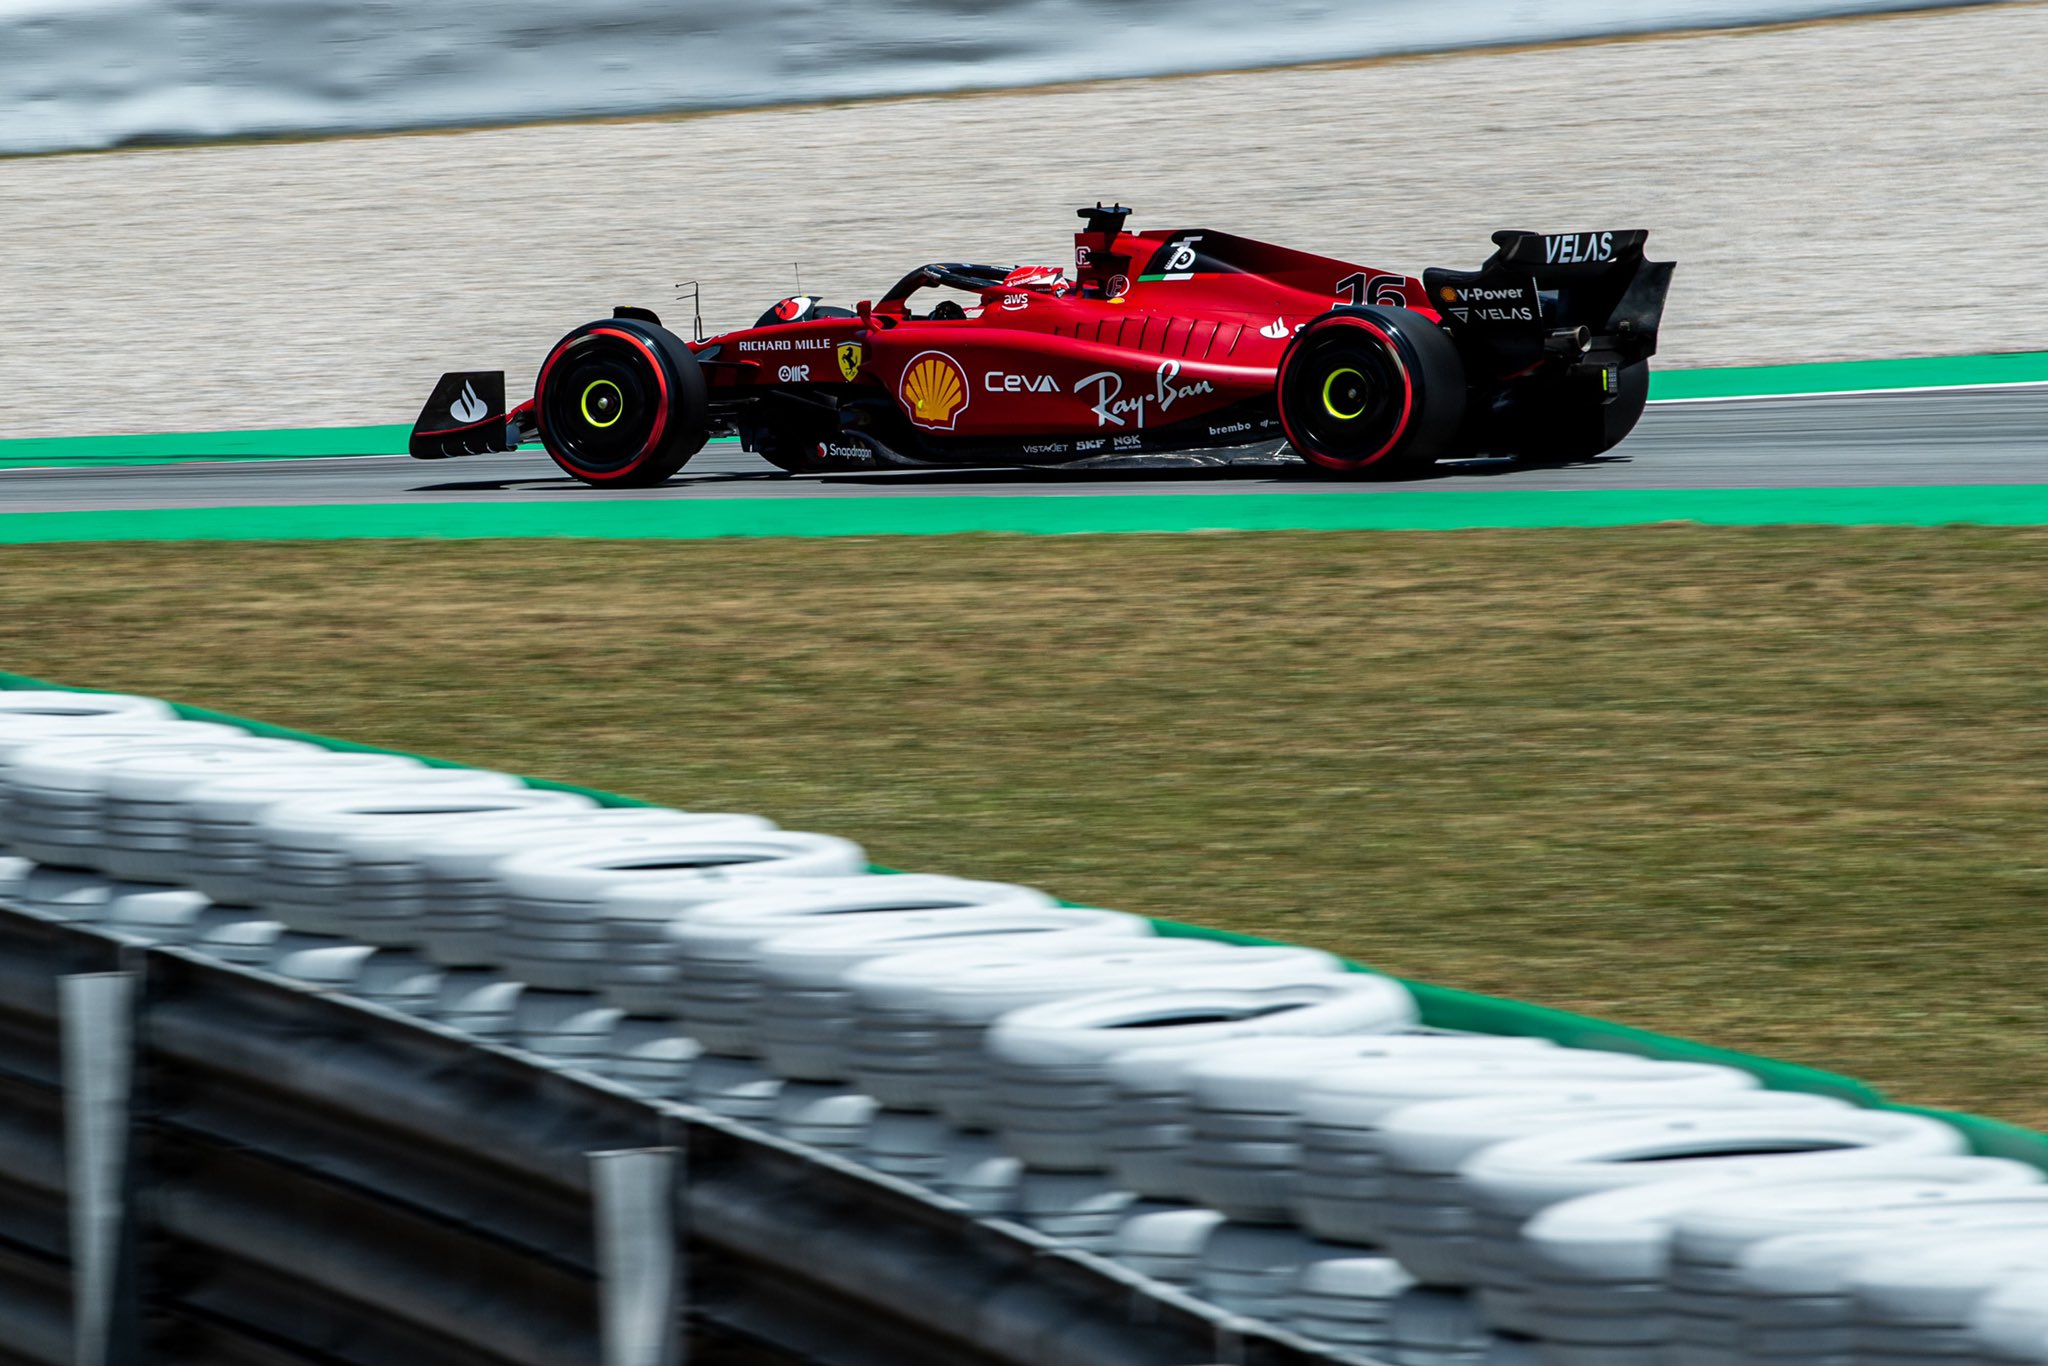 F1 - Charles Leclerc en pole position au Grand Prix F1 d'Espagne 2022